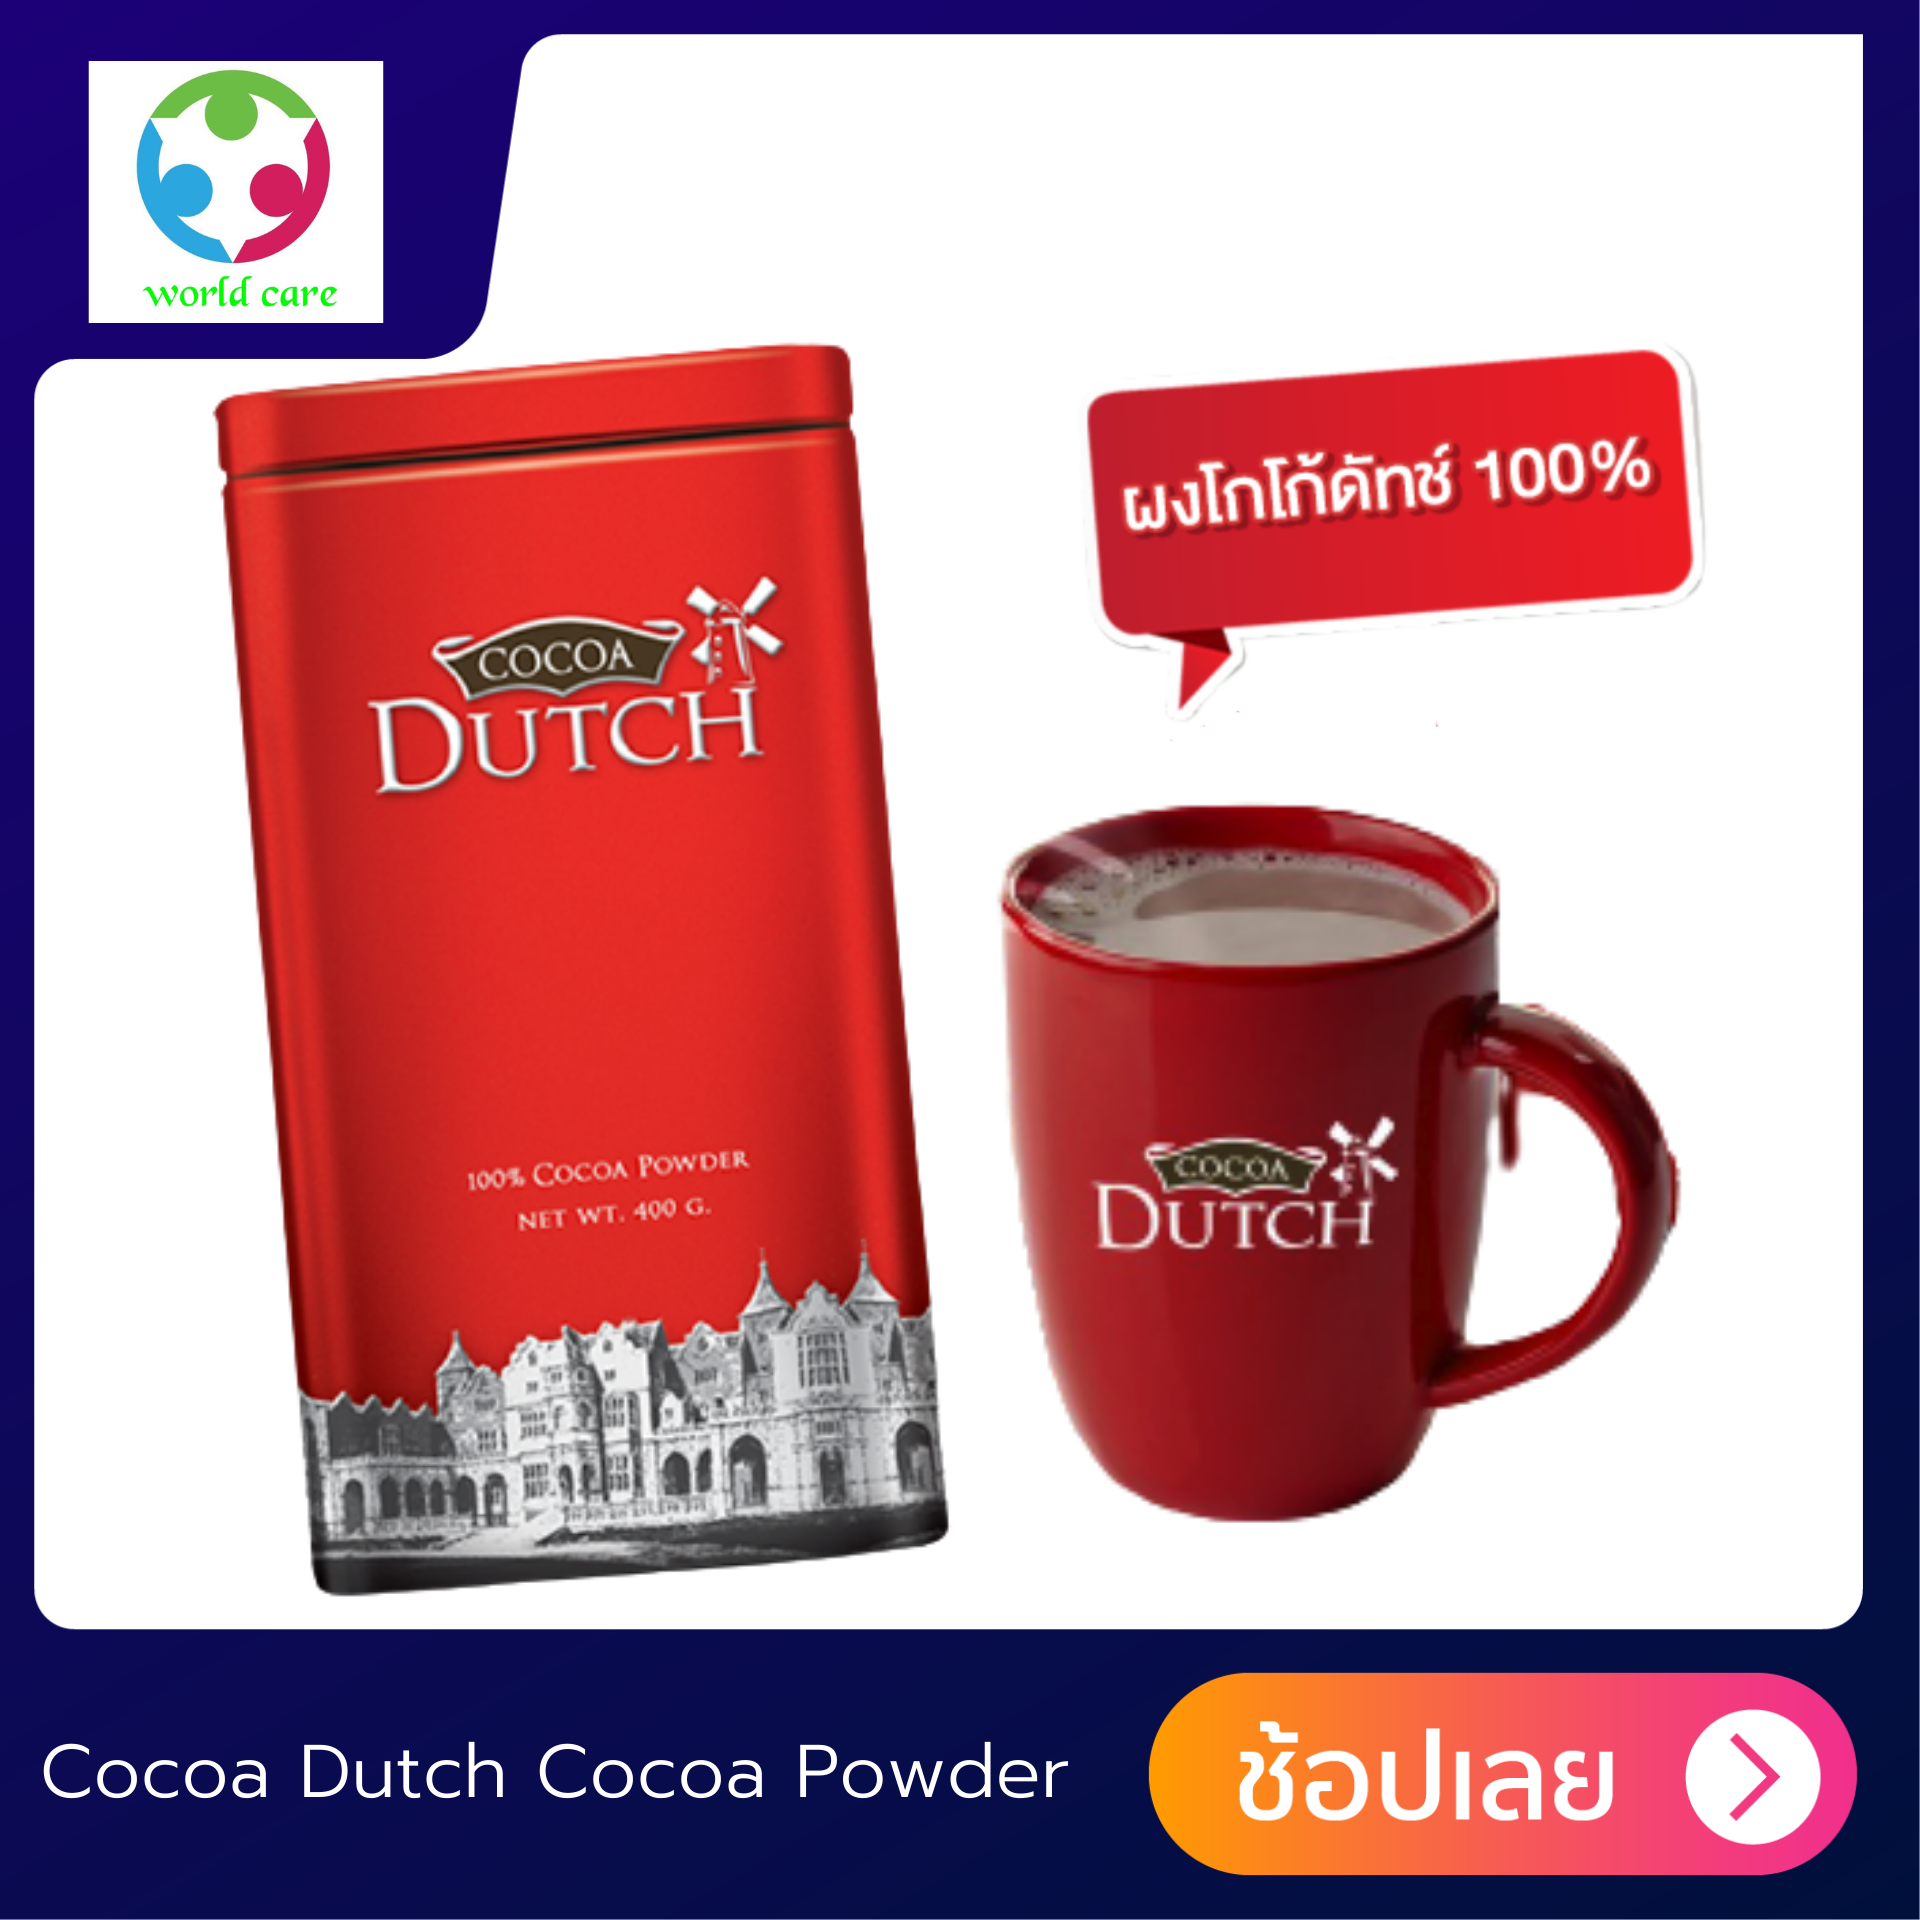 โกโก้ผง ตราโกโก้ดัทช์ เครื่องดื่มโกโก้ ชนิดผง Cocoa Dutch Cocoa Powder 200g. โกโก้ผง100 % จากเนเธอร์แลนด์  รสชาติ เข้มข้ม หอม อร่อย ดื่มได้ทุกเวลา